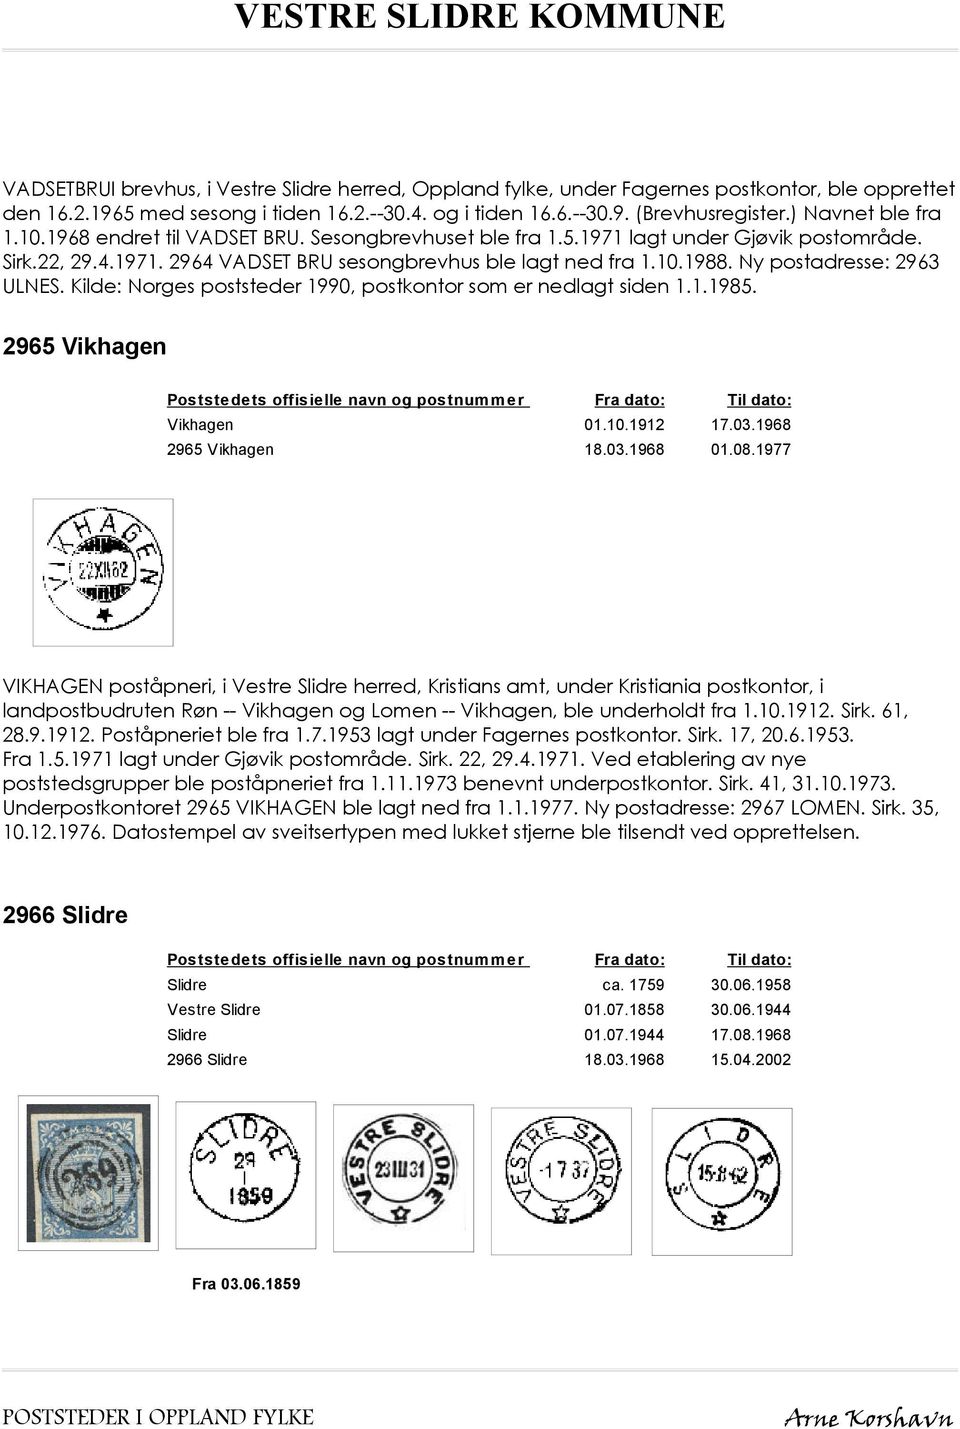 Ny postadresse: 2963 ULNES. Kilde: Norges poststeder 1990, postkontor som er nedlagt siden 1.1.1985. 2965 Vikhagen Vikhagen 01.10.1912 17.03.1968 2965 Vikhagen 18.03.1968 01.08.